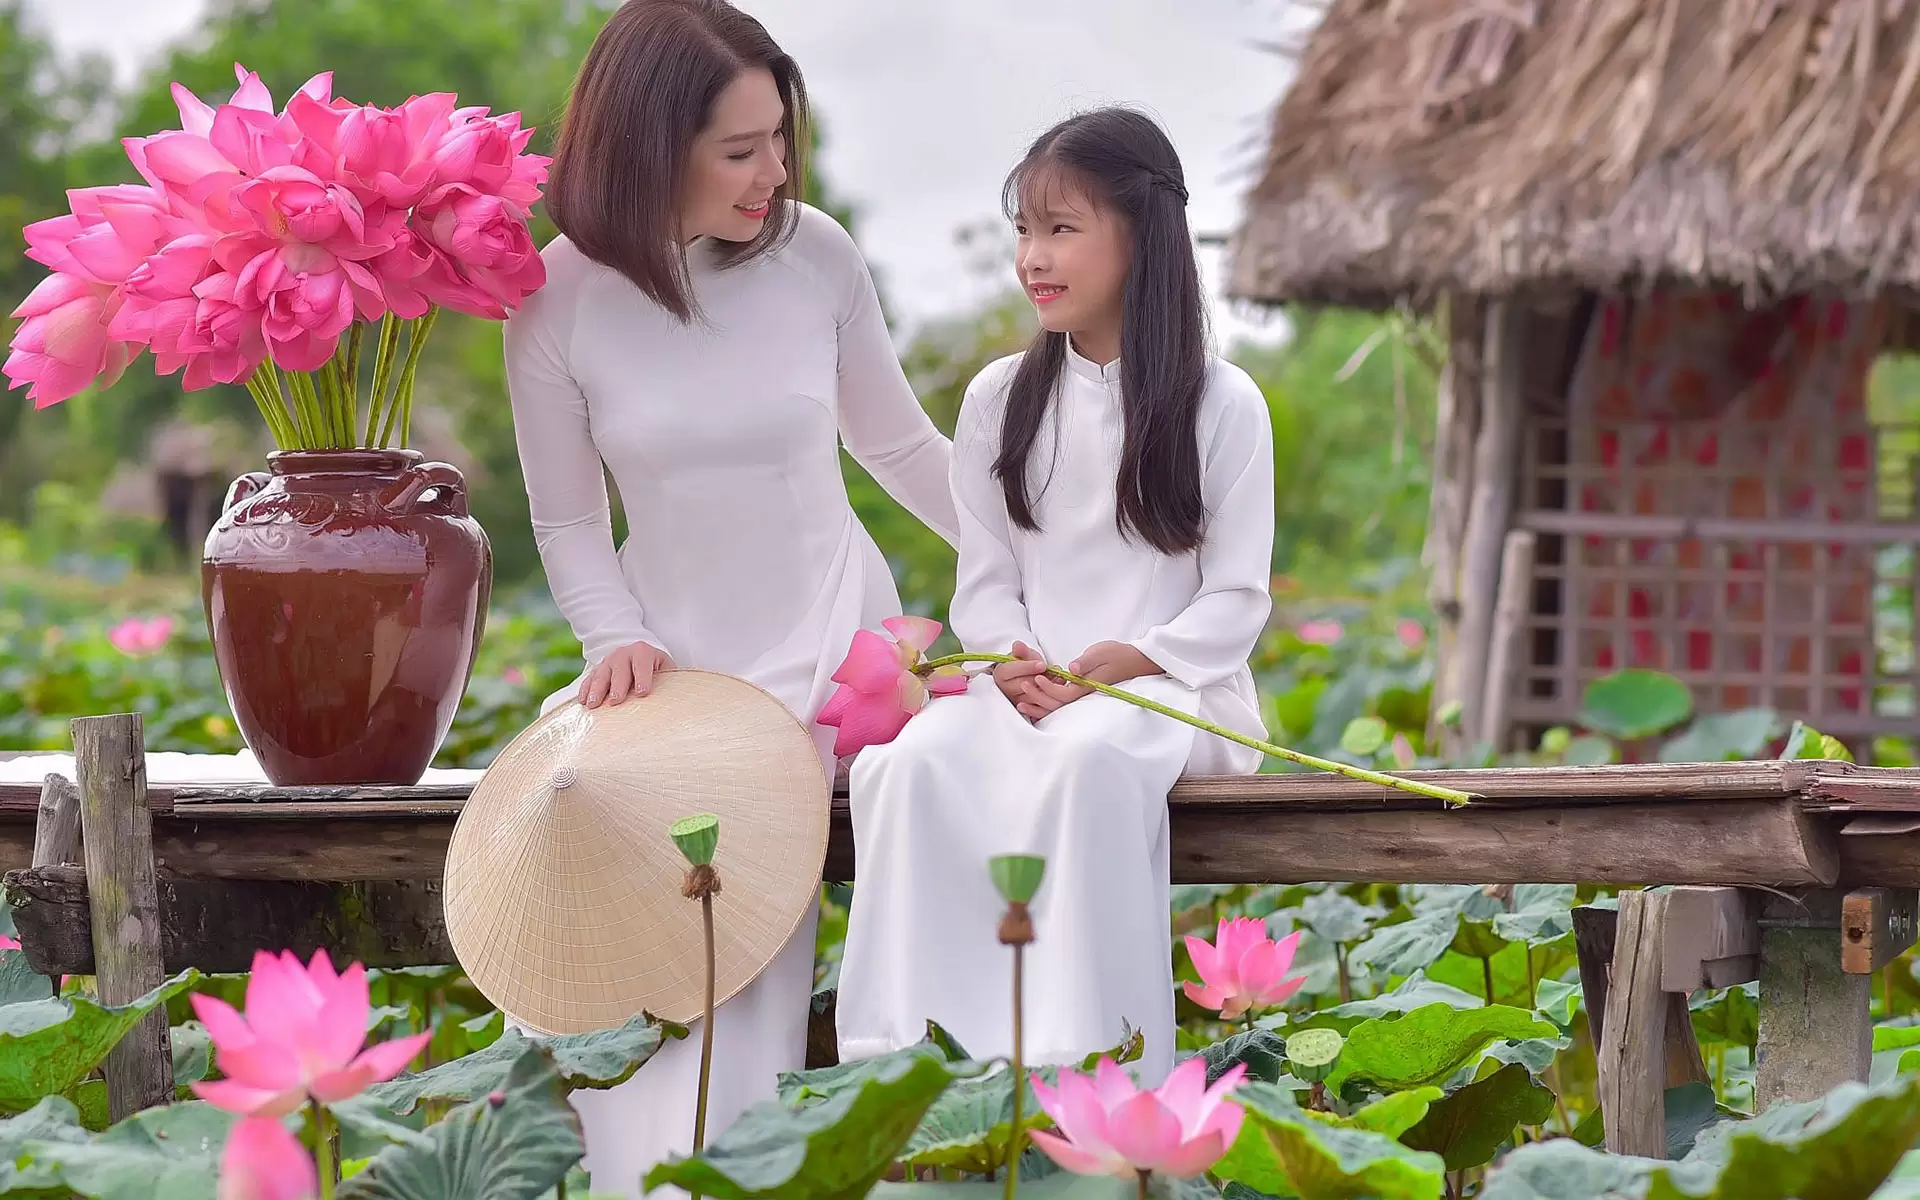 Hãy khám phá vẻ đẹp tuyệt vời của hoa Việt Nam và đắm mình trong những trải nghiệm du lịch đầy thú vị. Tại đây, bạn sẽ tìm thấy thông tin chi tiết về các điểm đến hoa Việt Nam nổi tiếng nhất, giúp bạn lựa chọn chuyến đi hoàn hảo nhất.